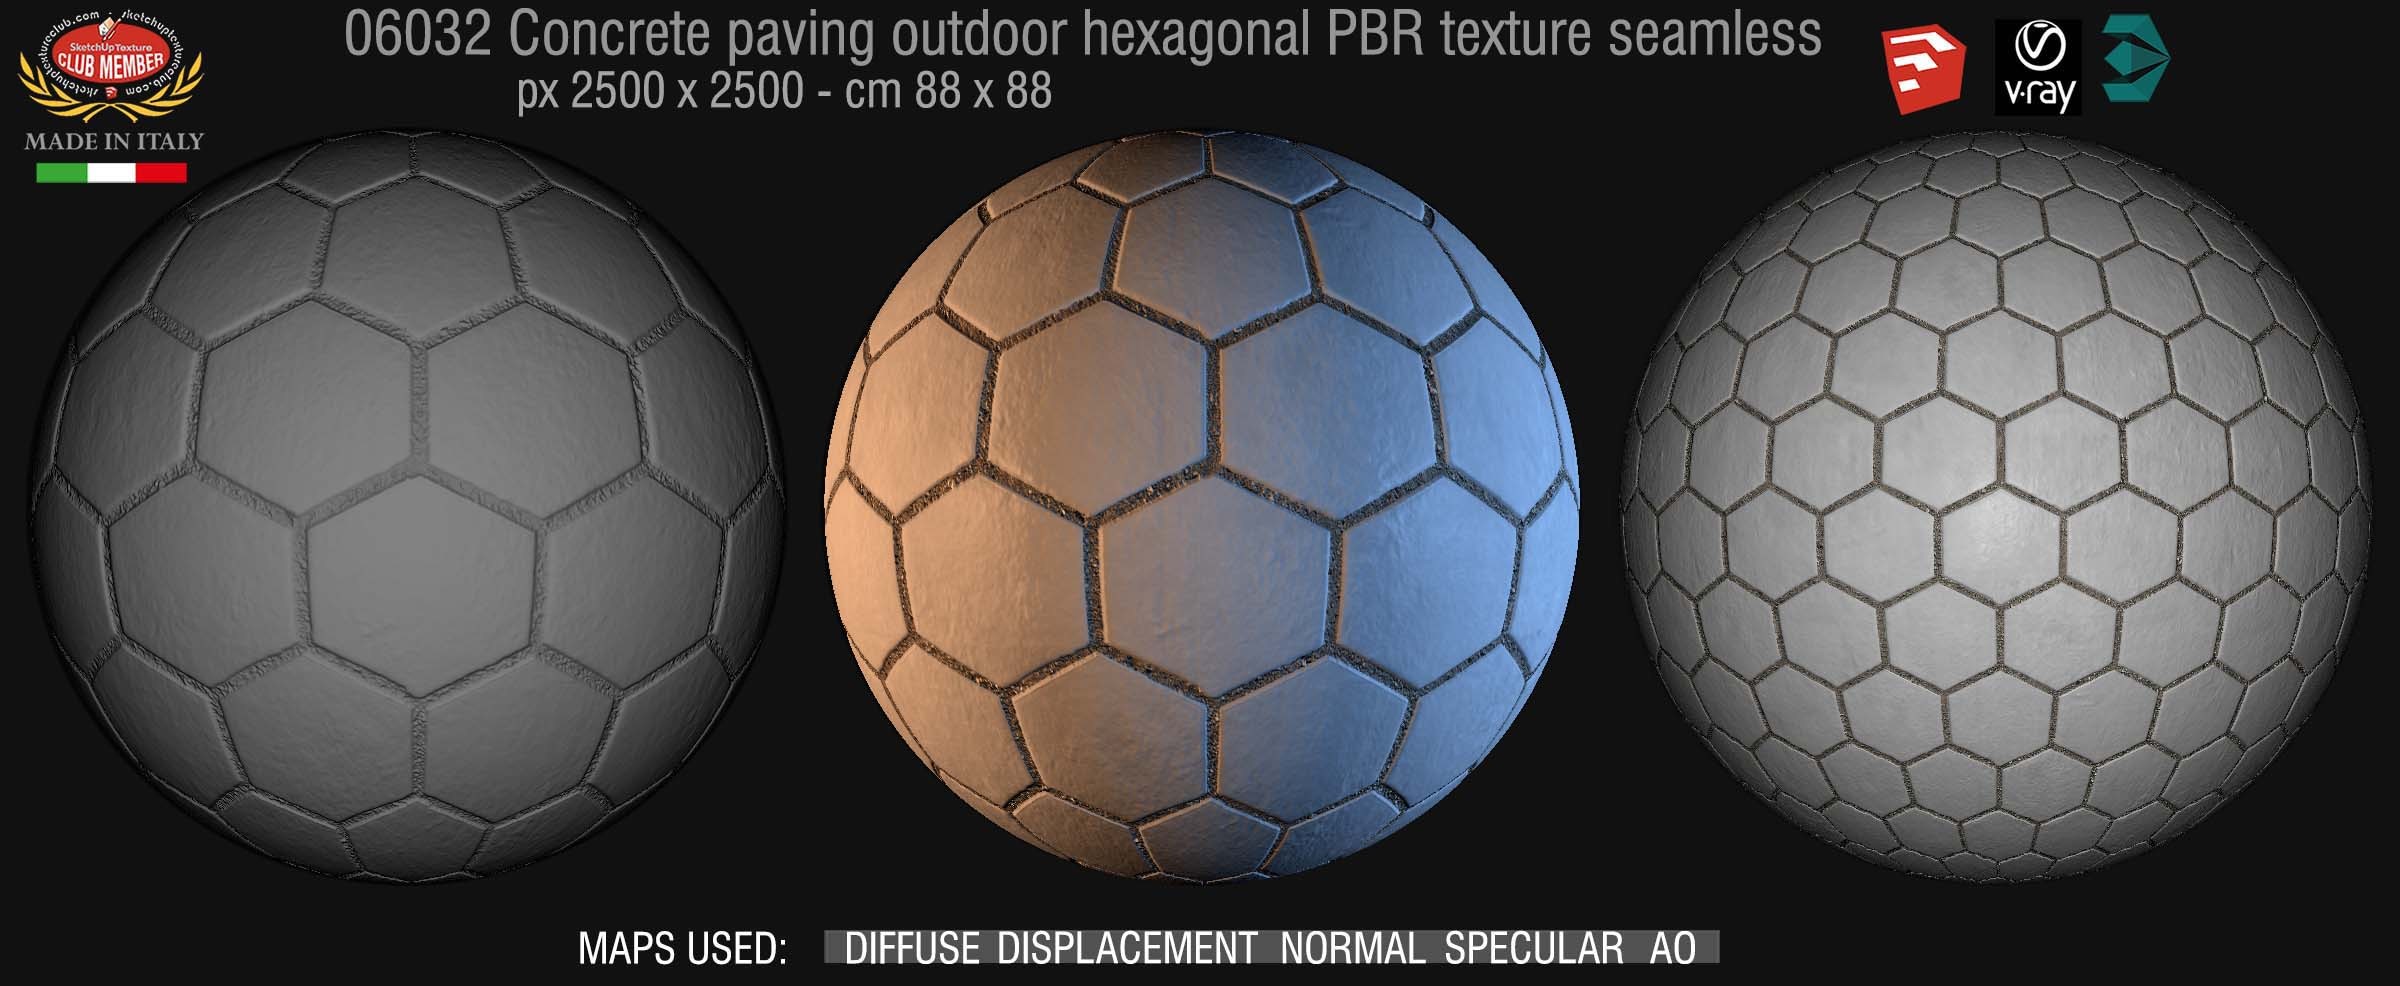 06032 Concrete paving outdoor hexagonal PBR texture seamless DEMO